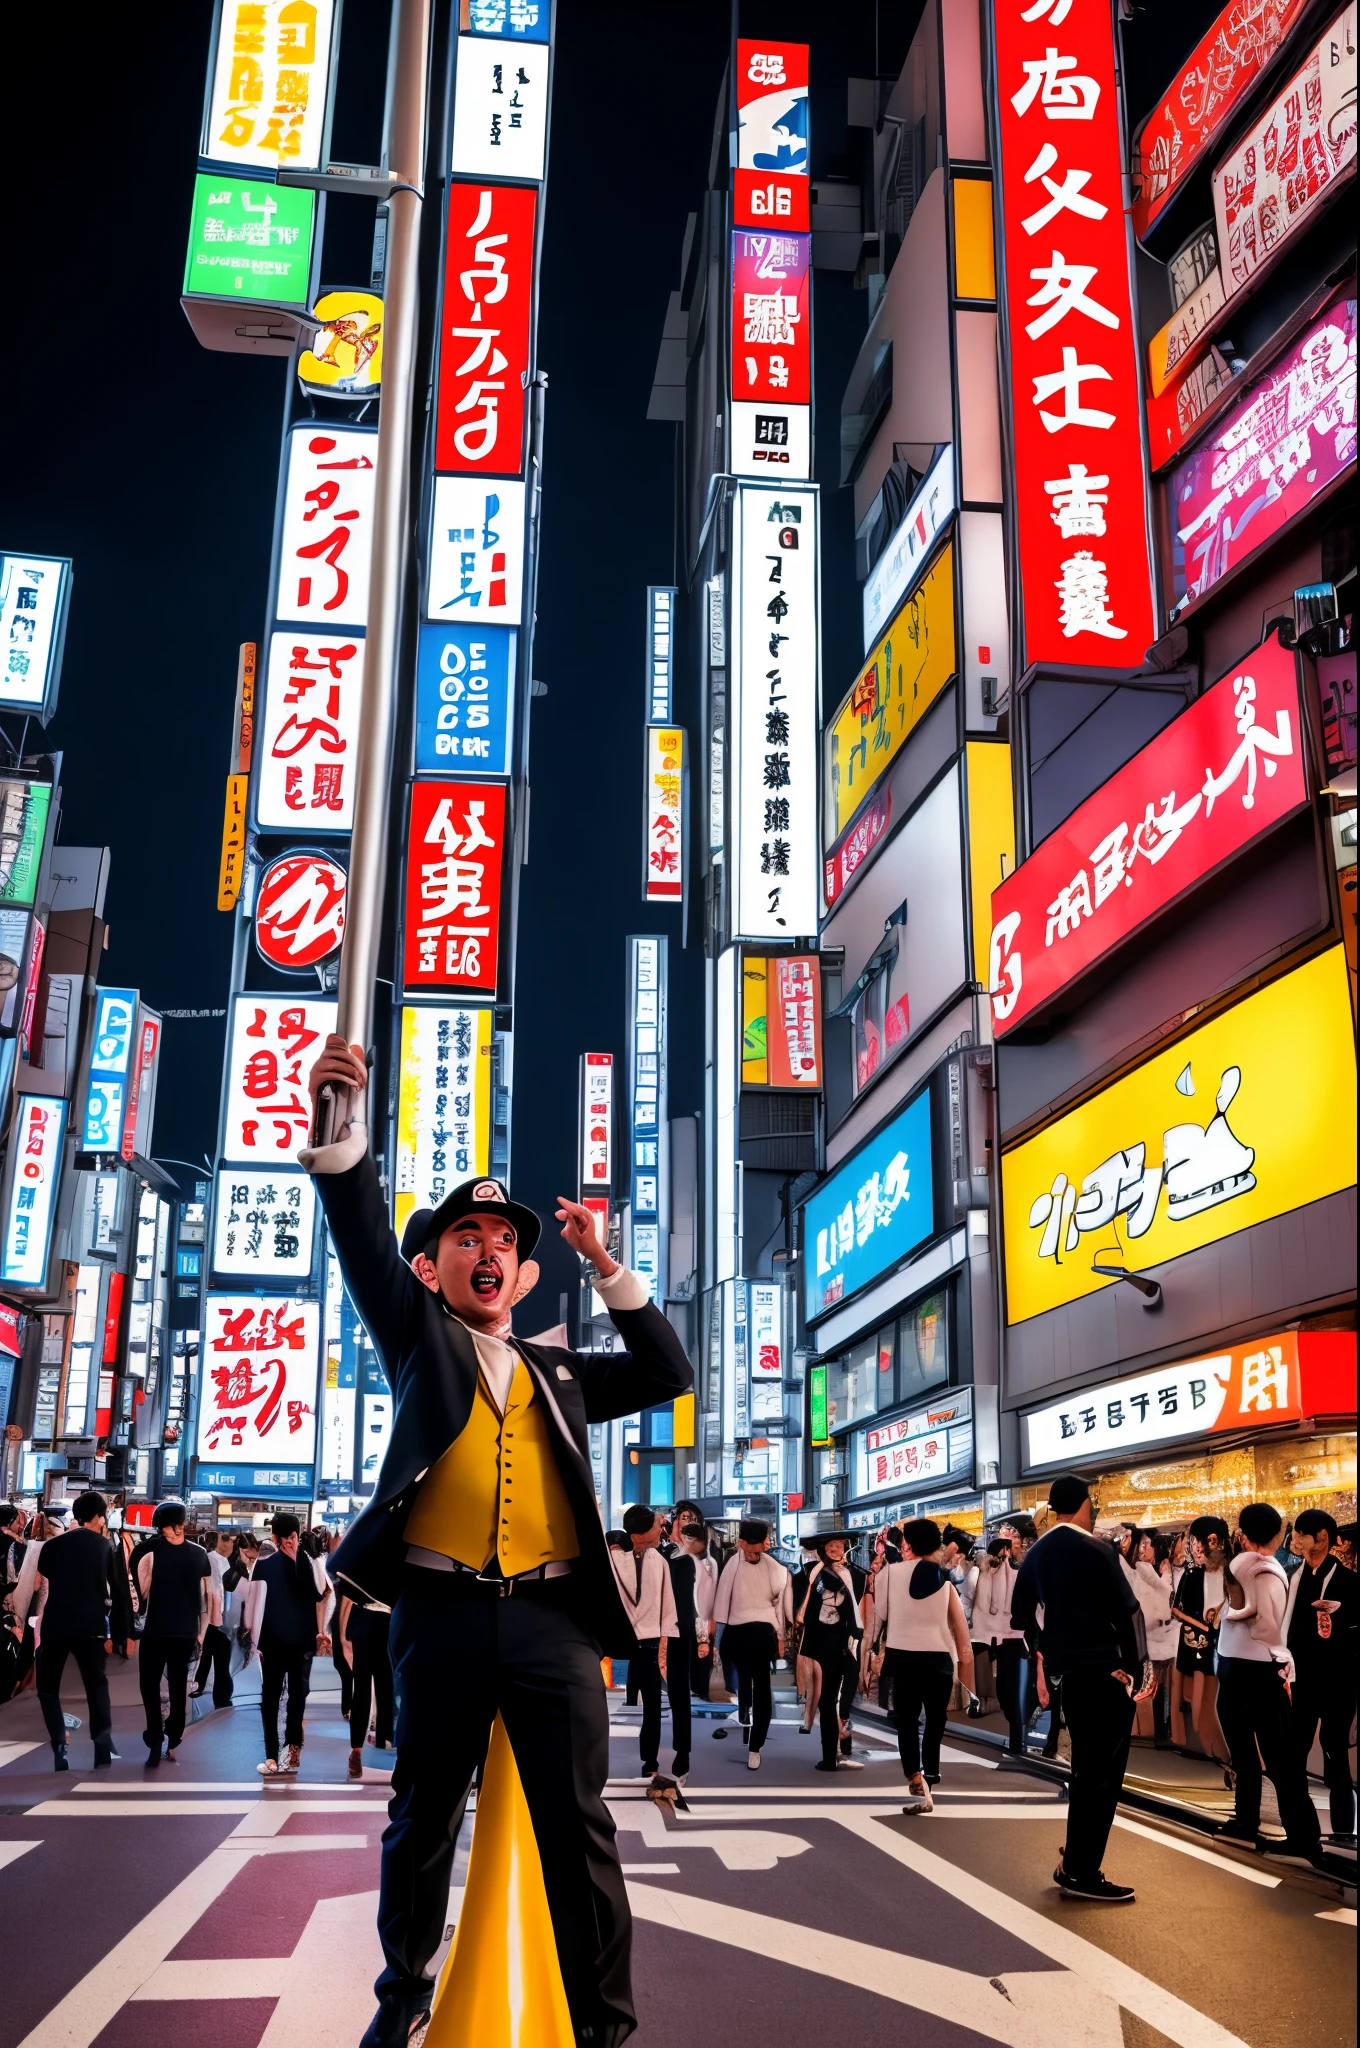 映画「東京ドリフト」風の夜景, ヒキガエルと, スーパーマリオブラザーズのアニメキャラクター, 東京のナイトライフの真ん中でベストだけを着てポールダンスをしている